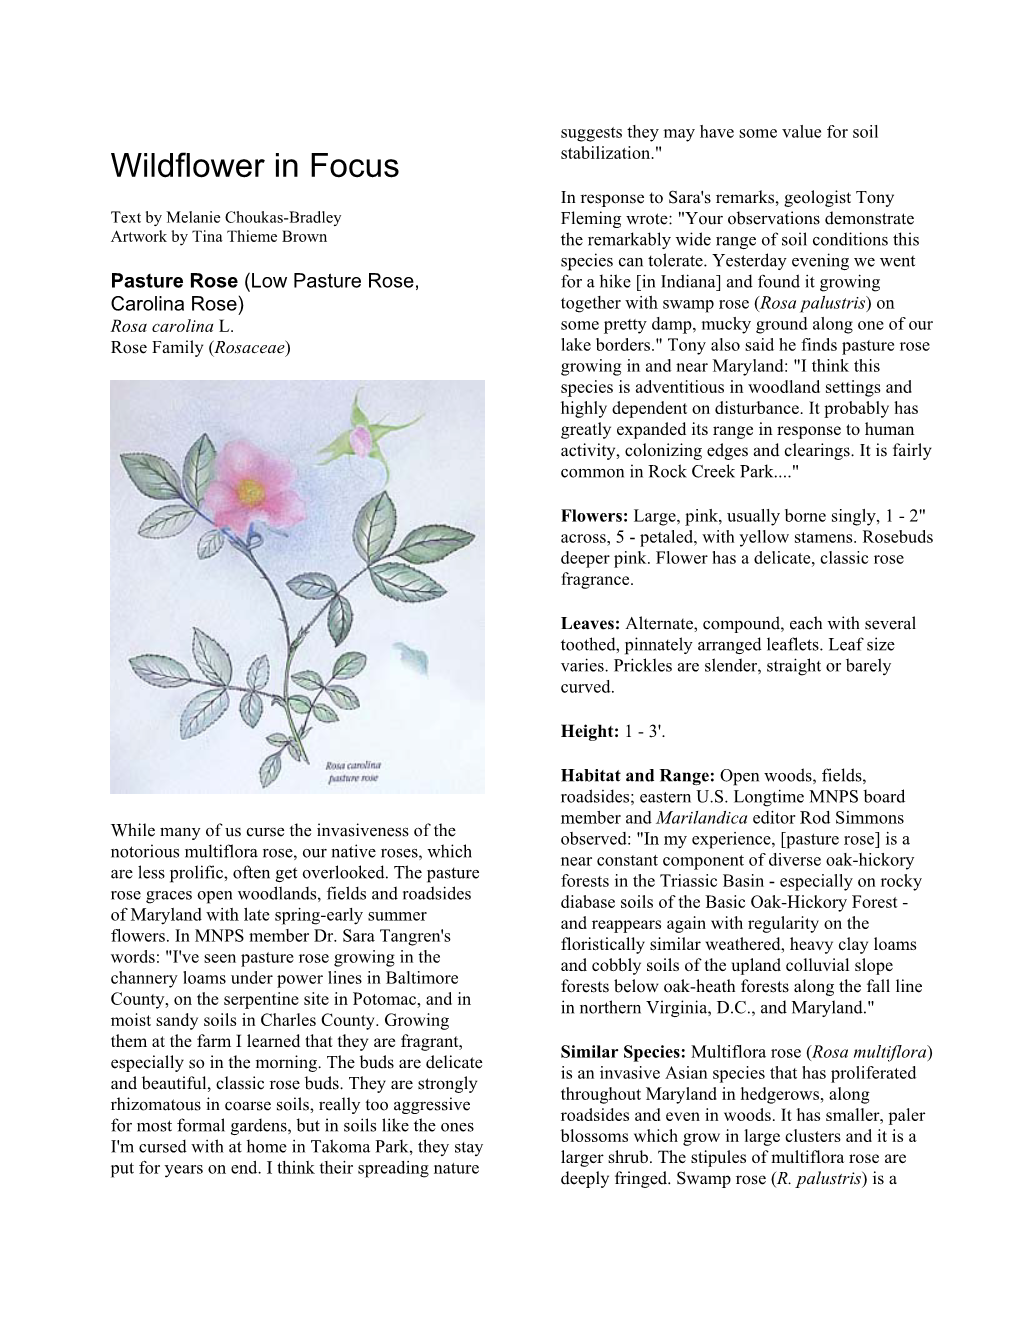 Wildflower in Focus: Pasture Rose